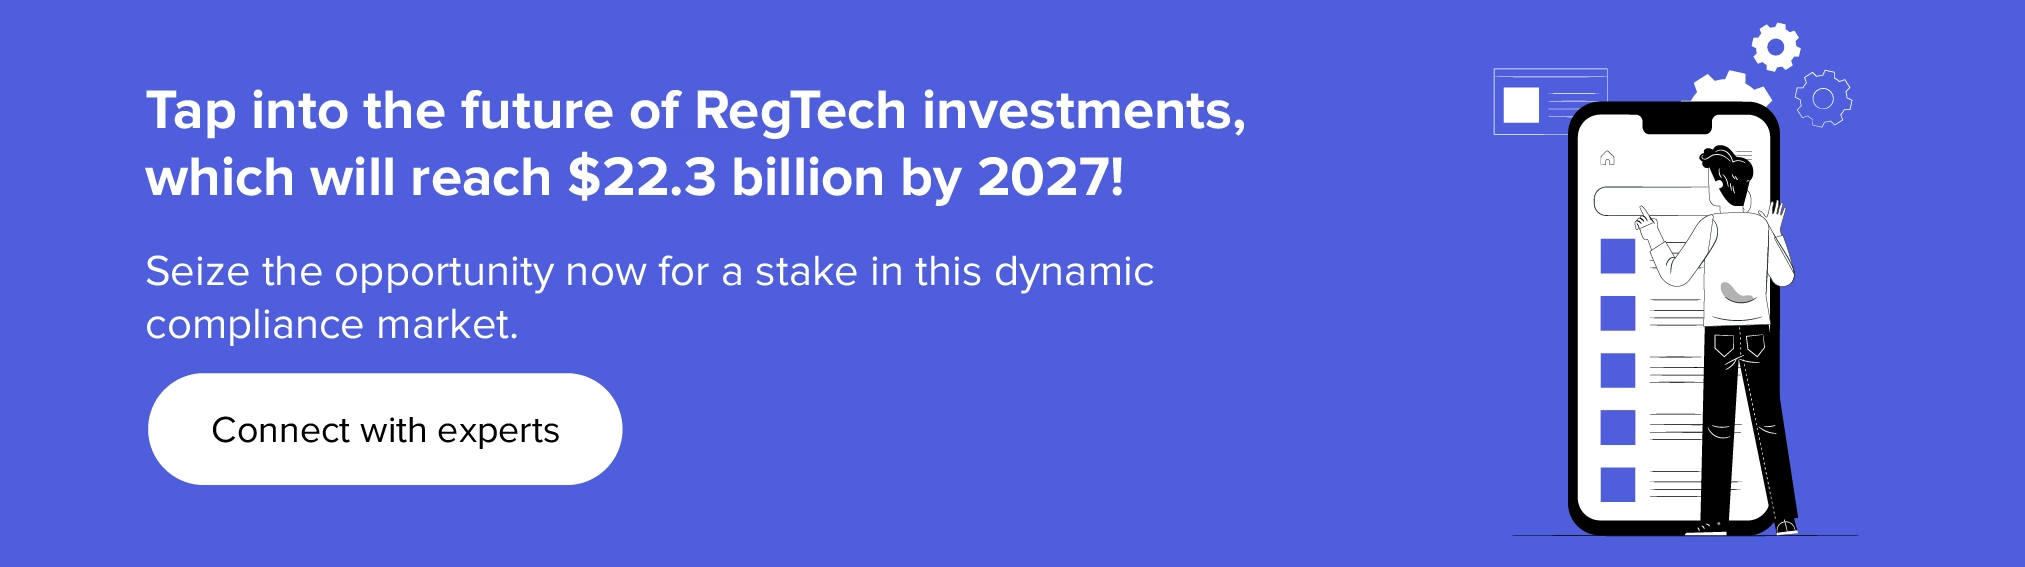 Wykorzystaj przyszłość inwestycji RegTech razem z naszymi ekspertami